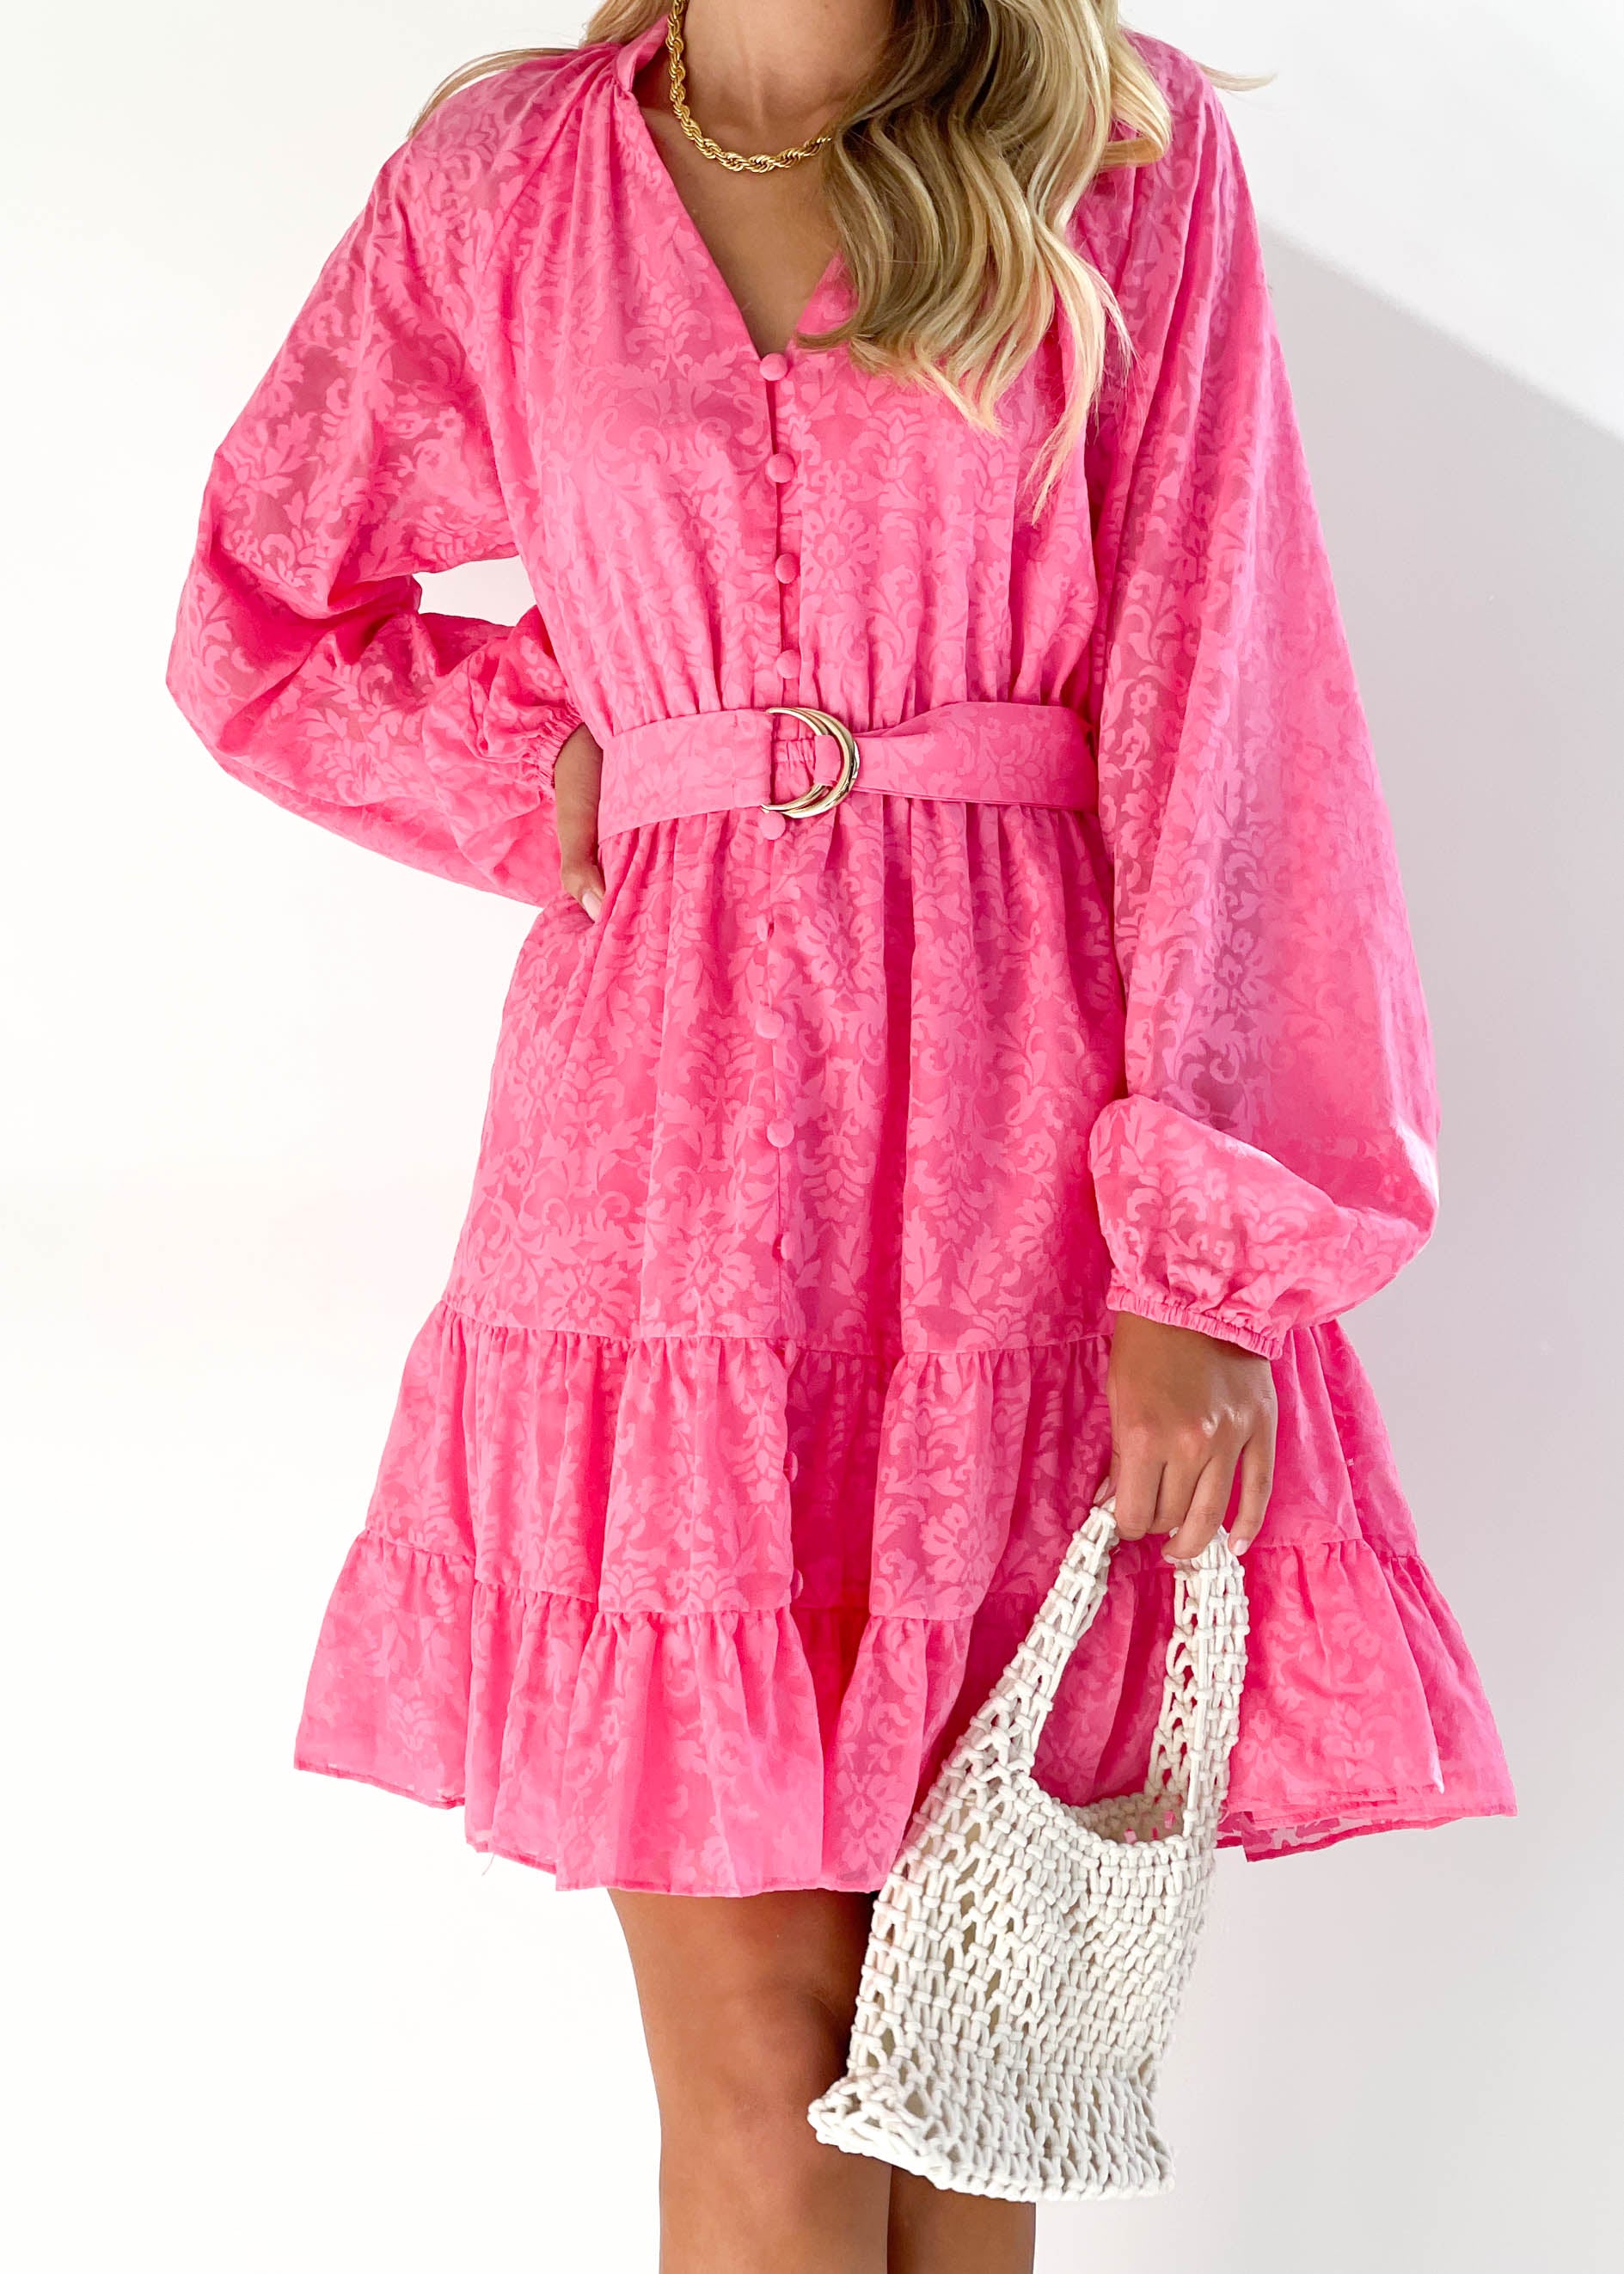 Julliana Dress - Hot Pink